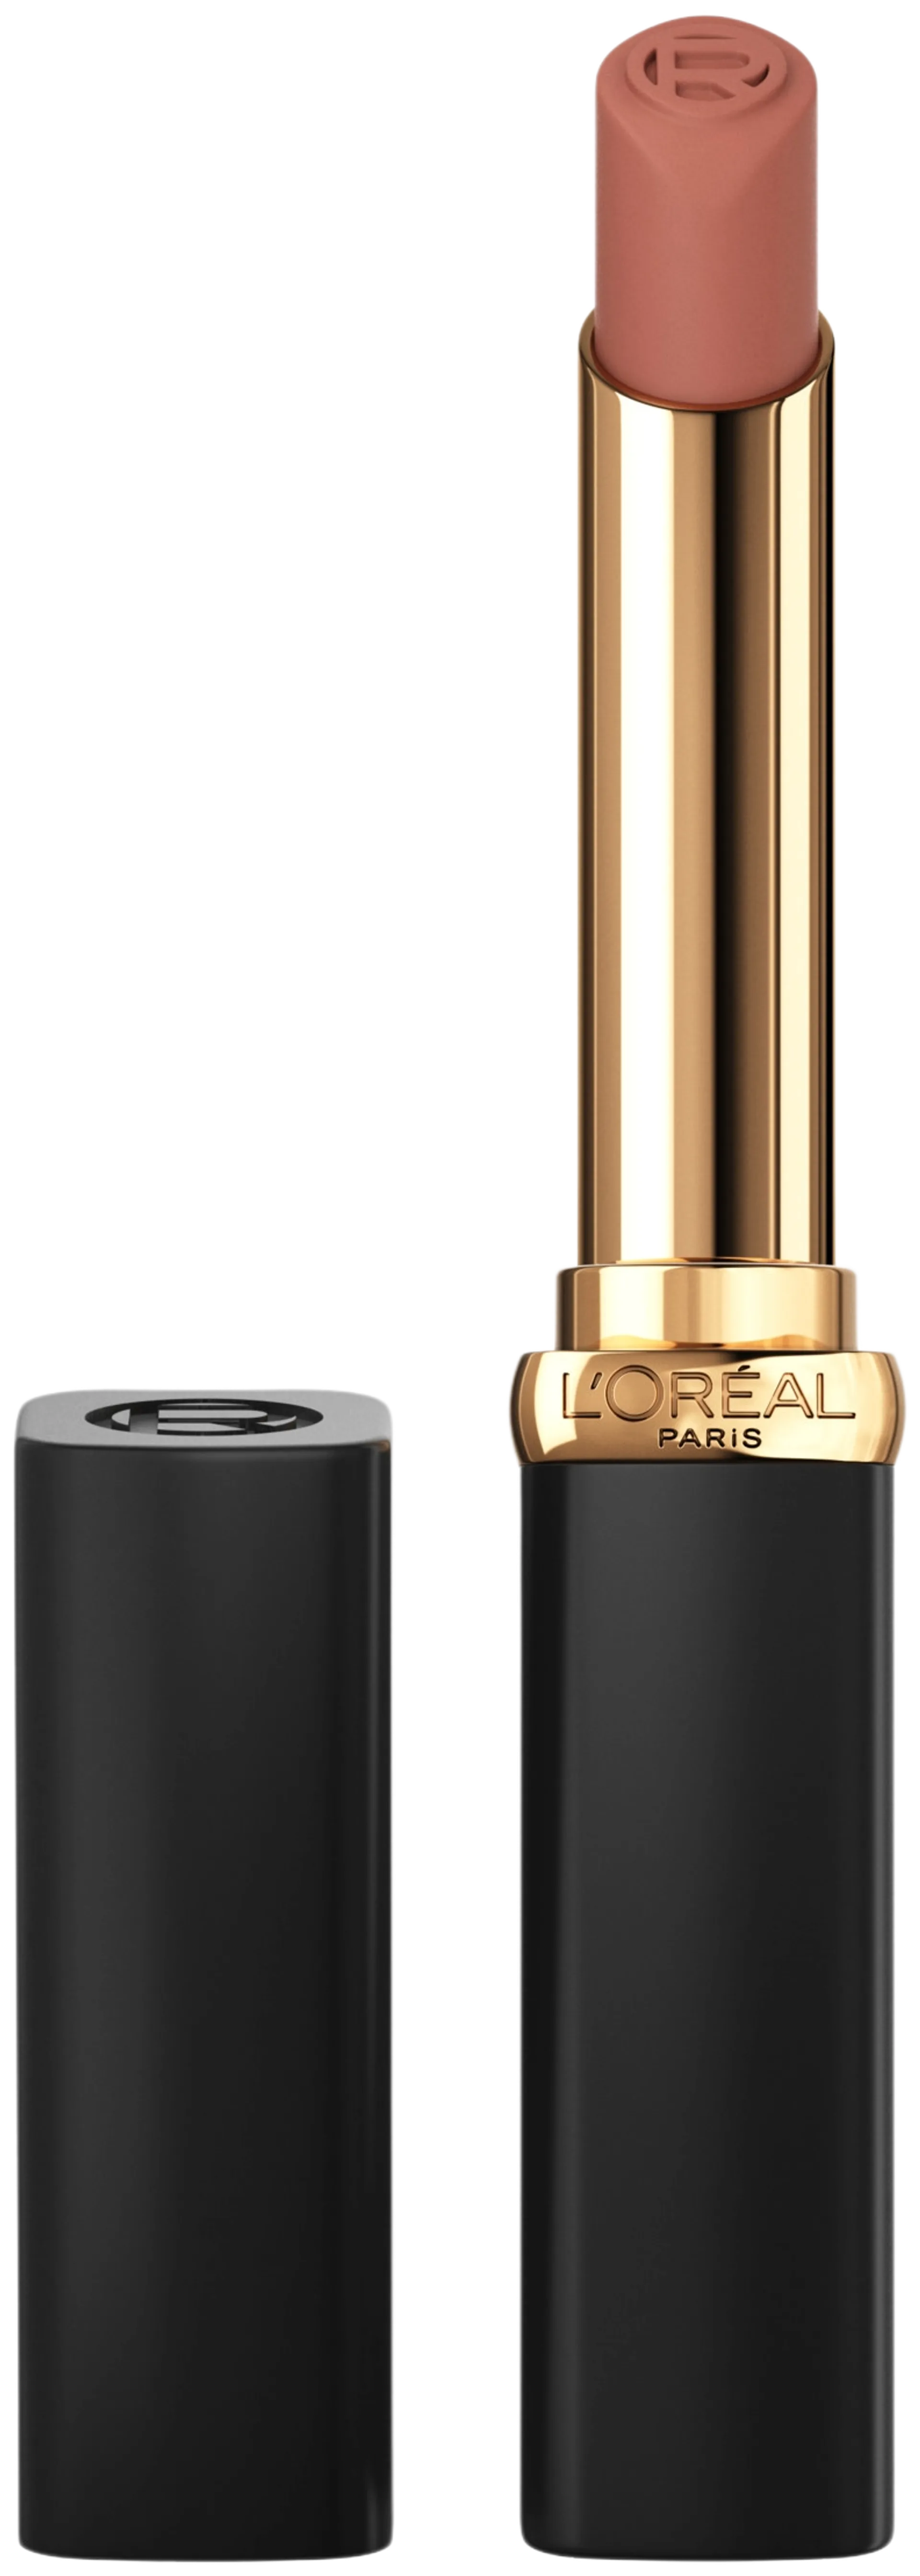 L'Oréal Paris Color Riche Intense Volume Matte 520 Le Nude Defiant huulipuna 1,8g - 520 Le Nude Defiant - 7